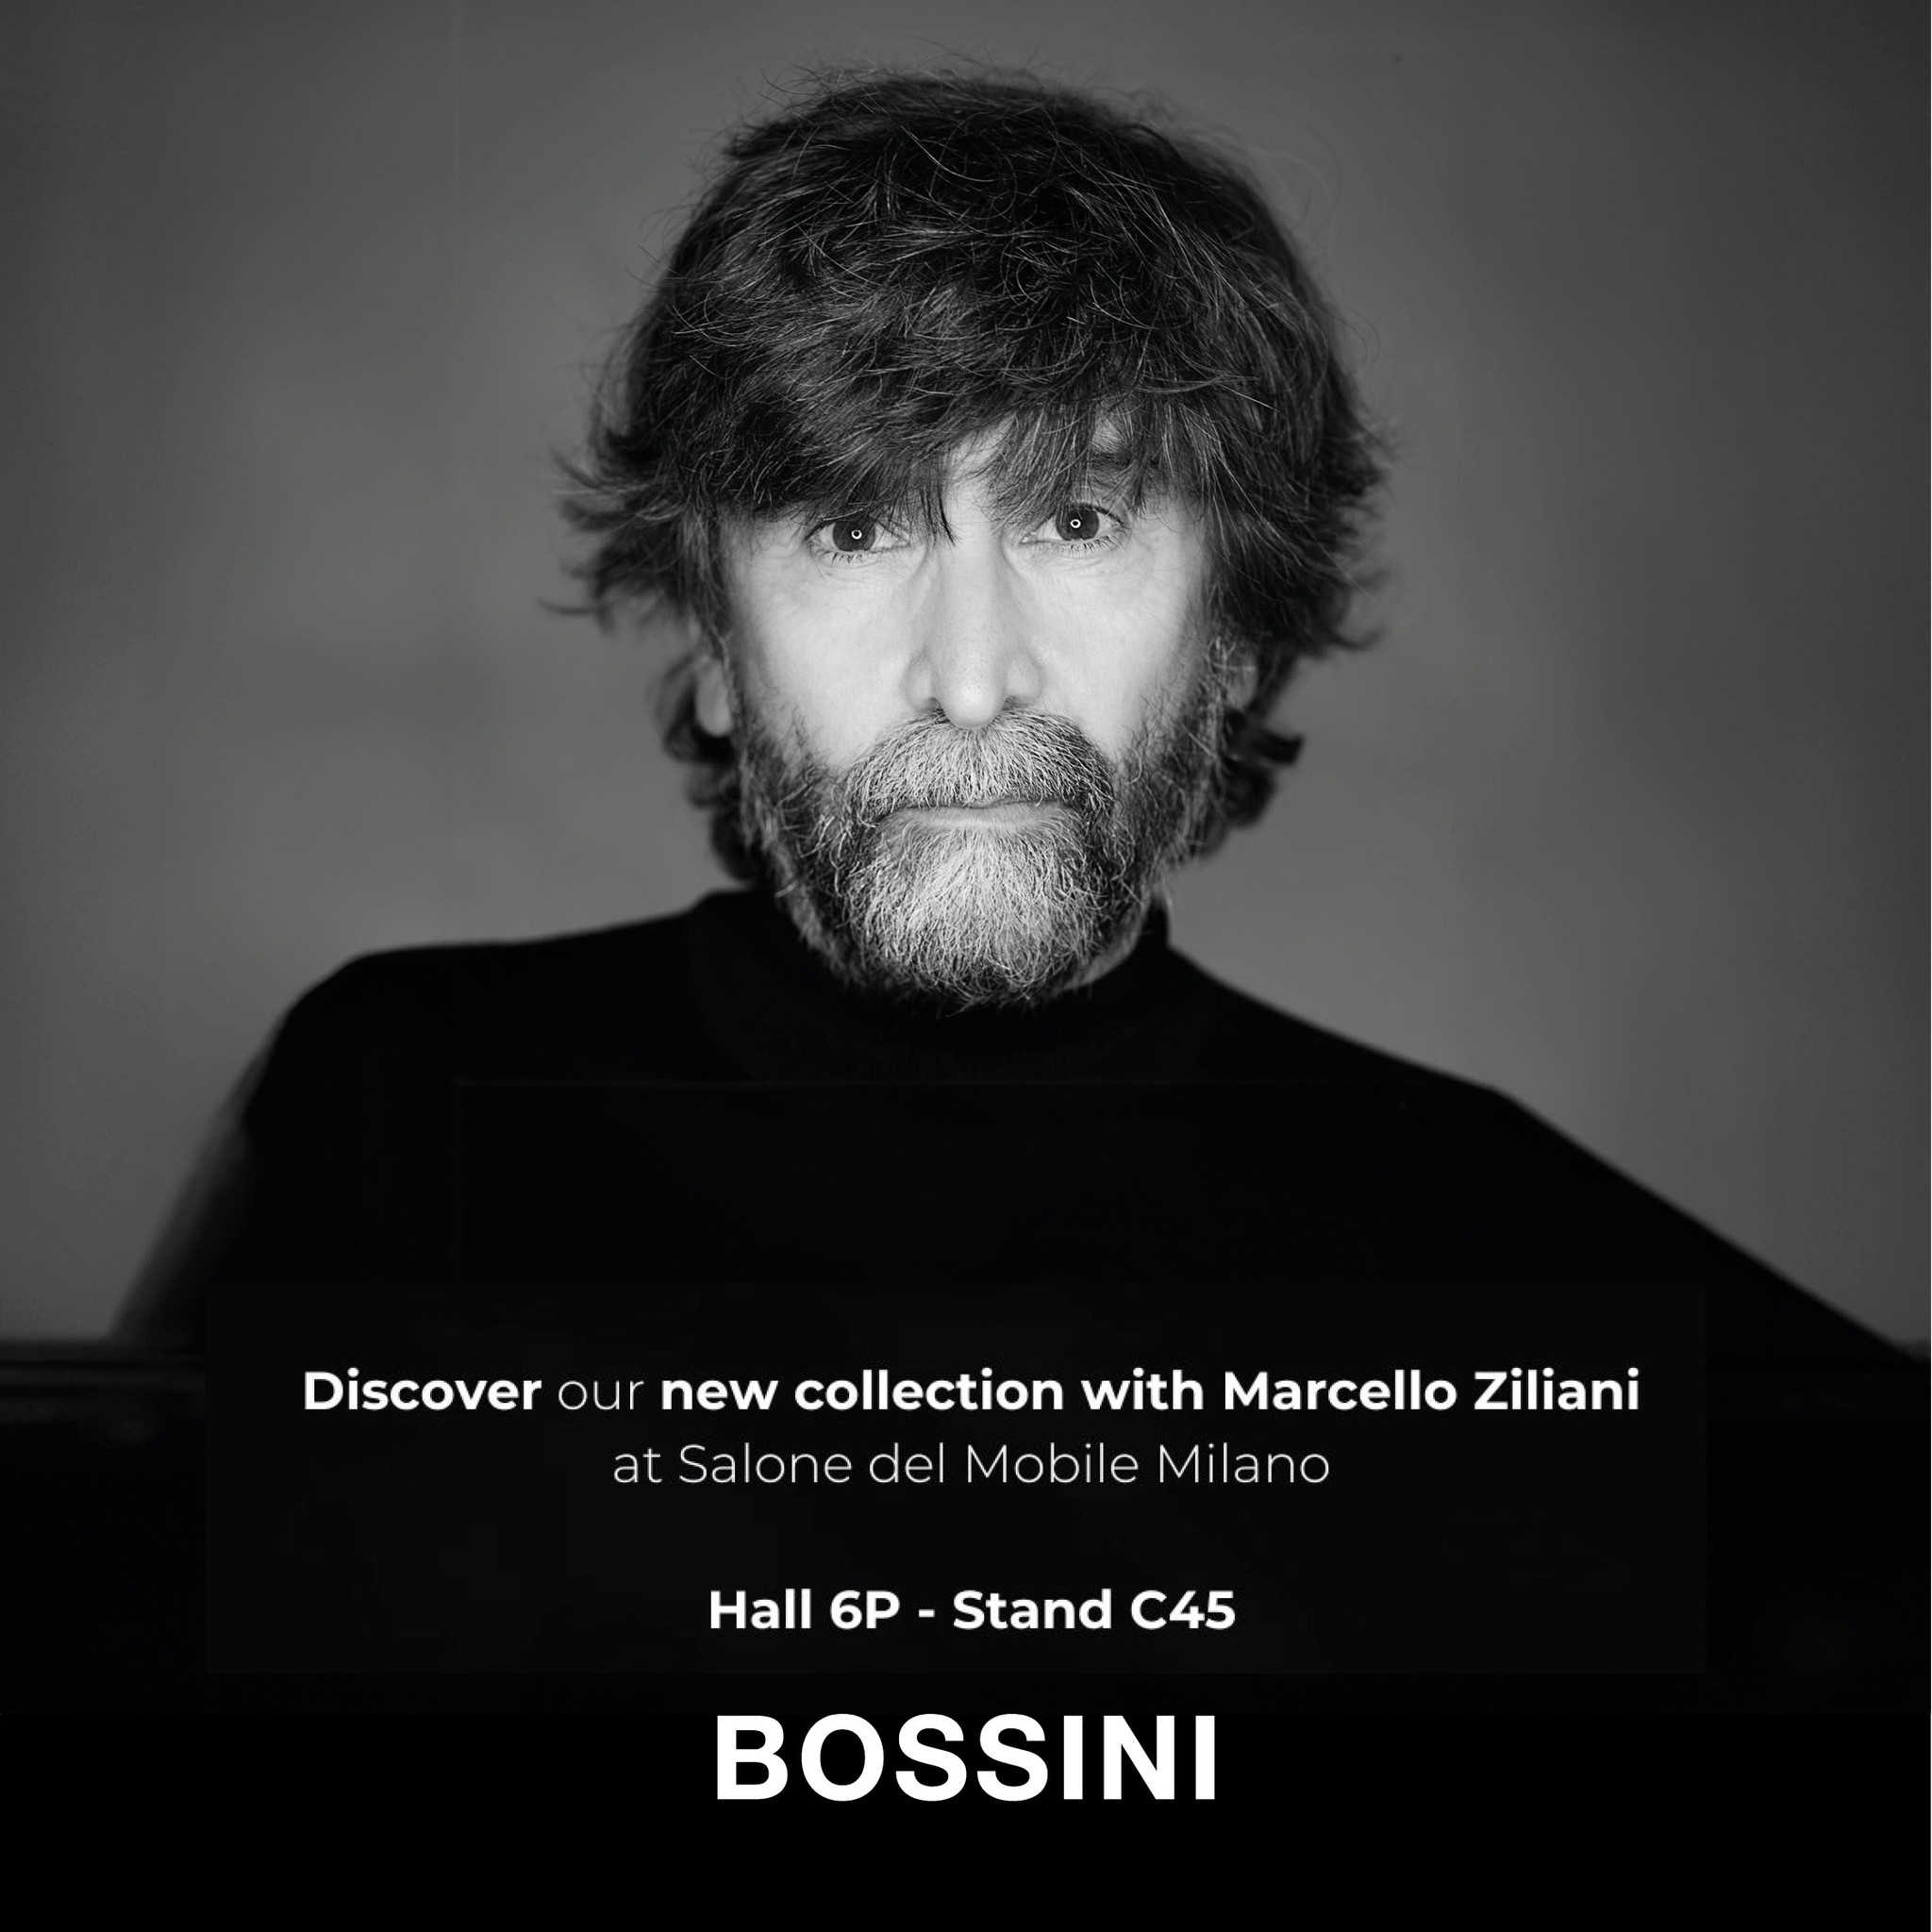 Marcello Ziliani signs the new Bossini collection